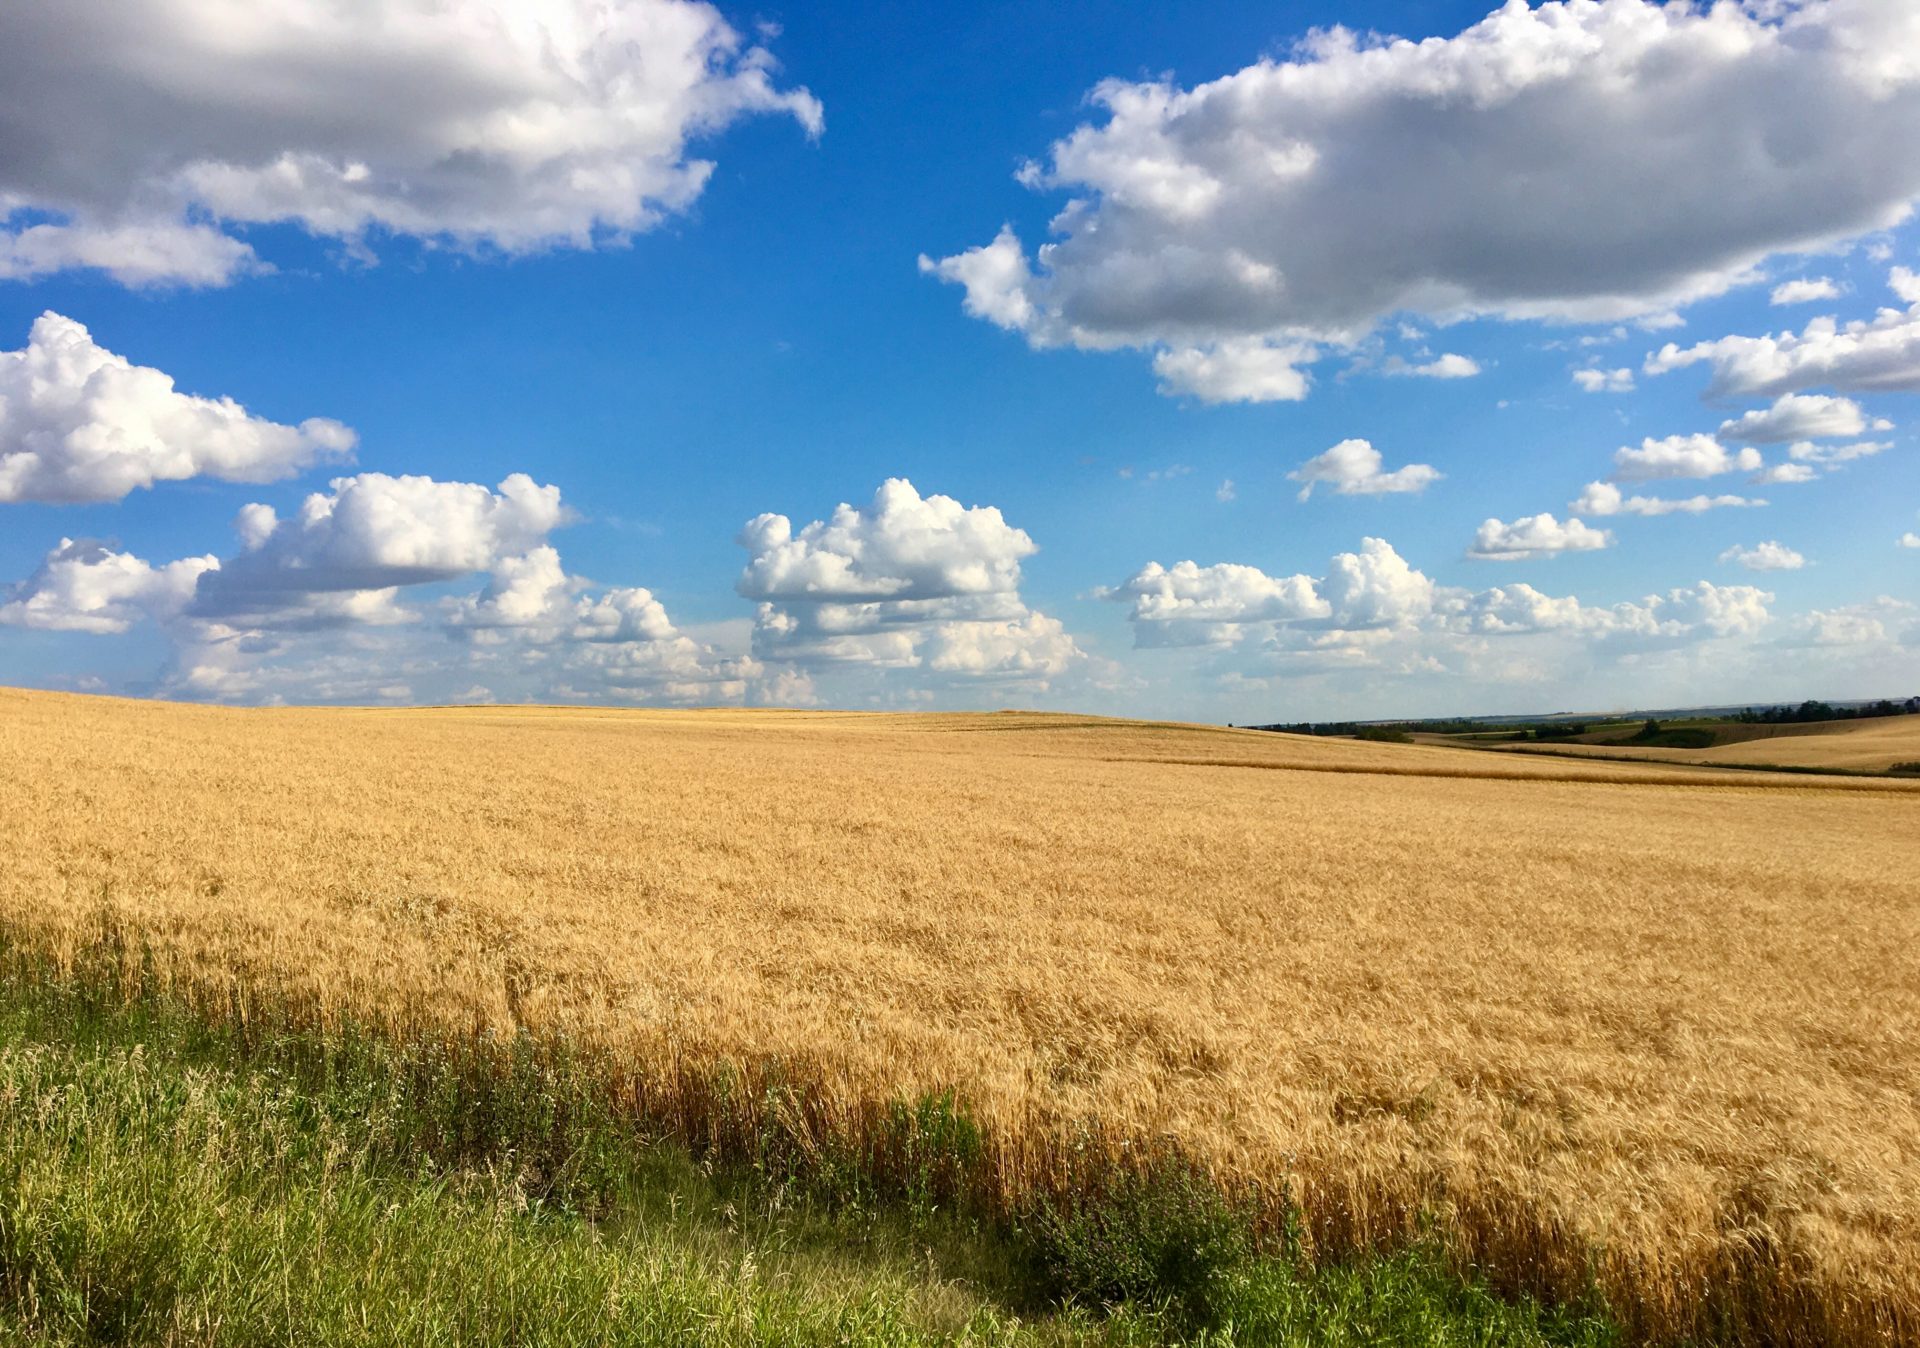 Wheat farm in rural Alberta, photo by five2seven